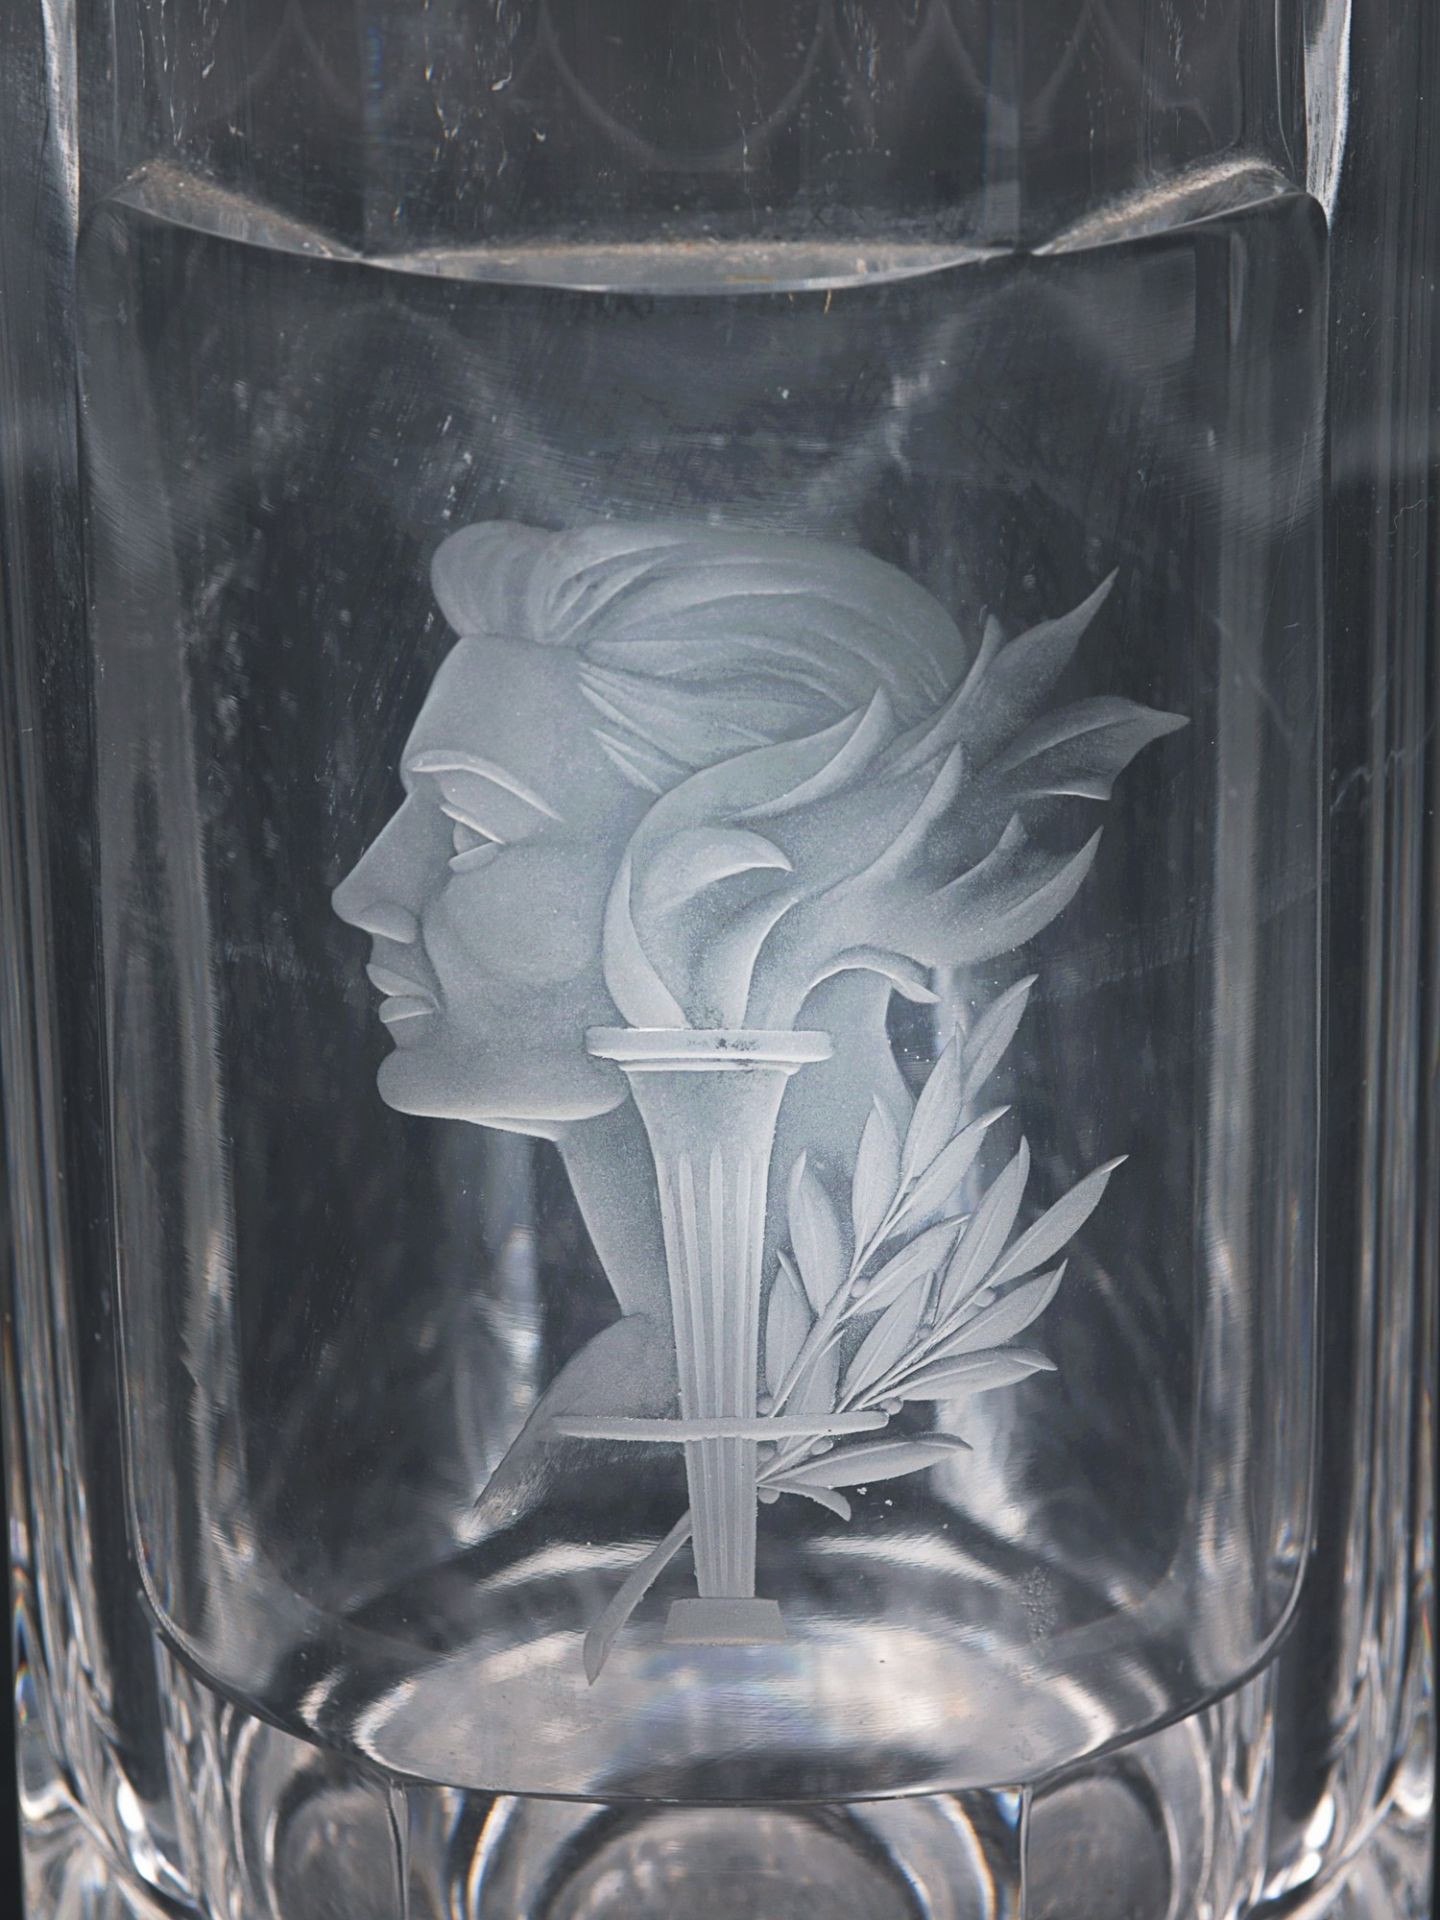 Vase um 1930, farbloses Glas, runder Stand, hoher konischer Korpus m. geschliffenem Ra - Bild 3 aus 5